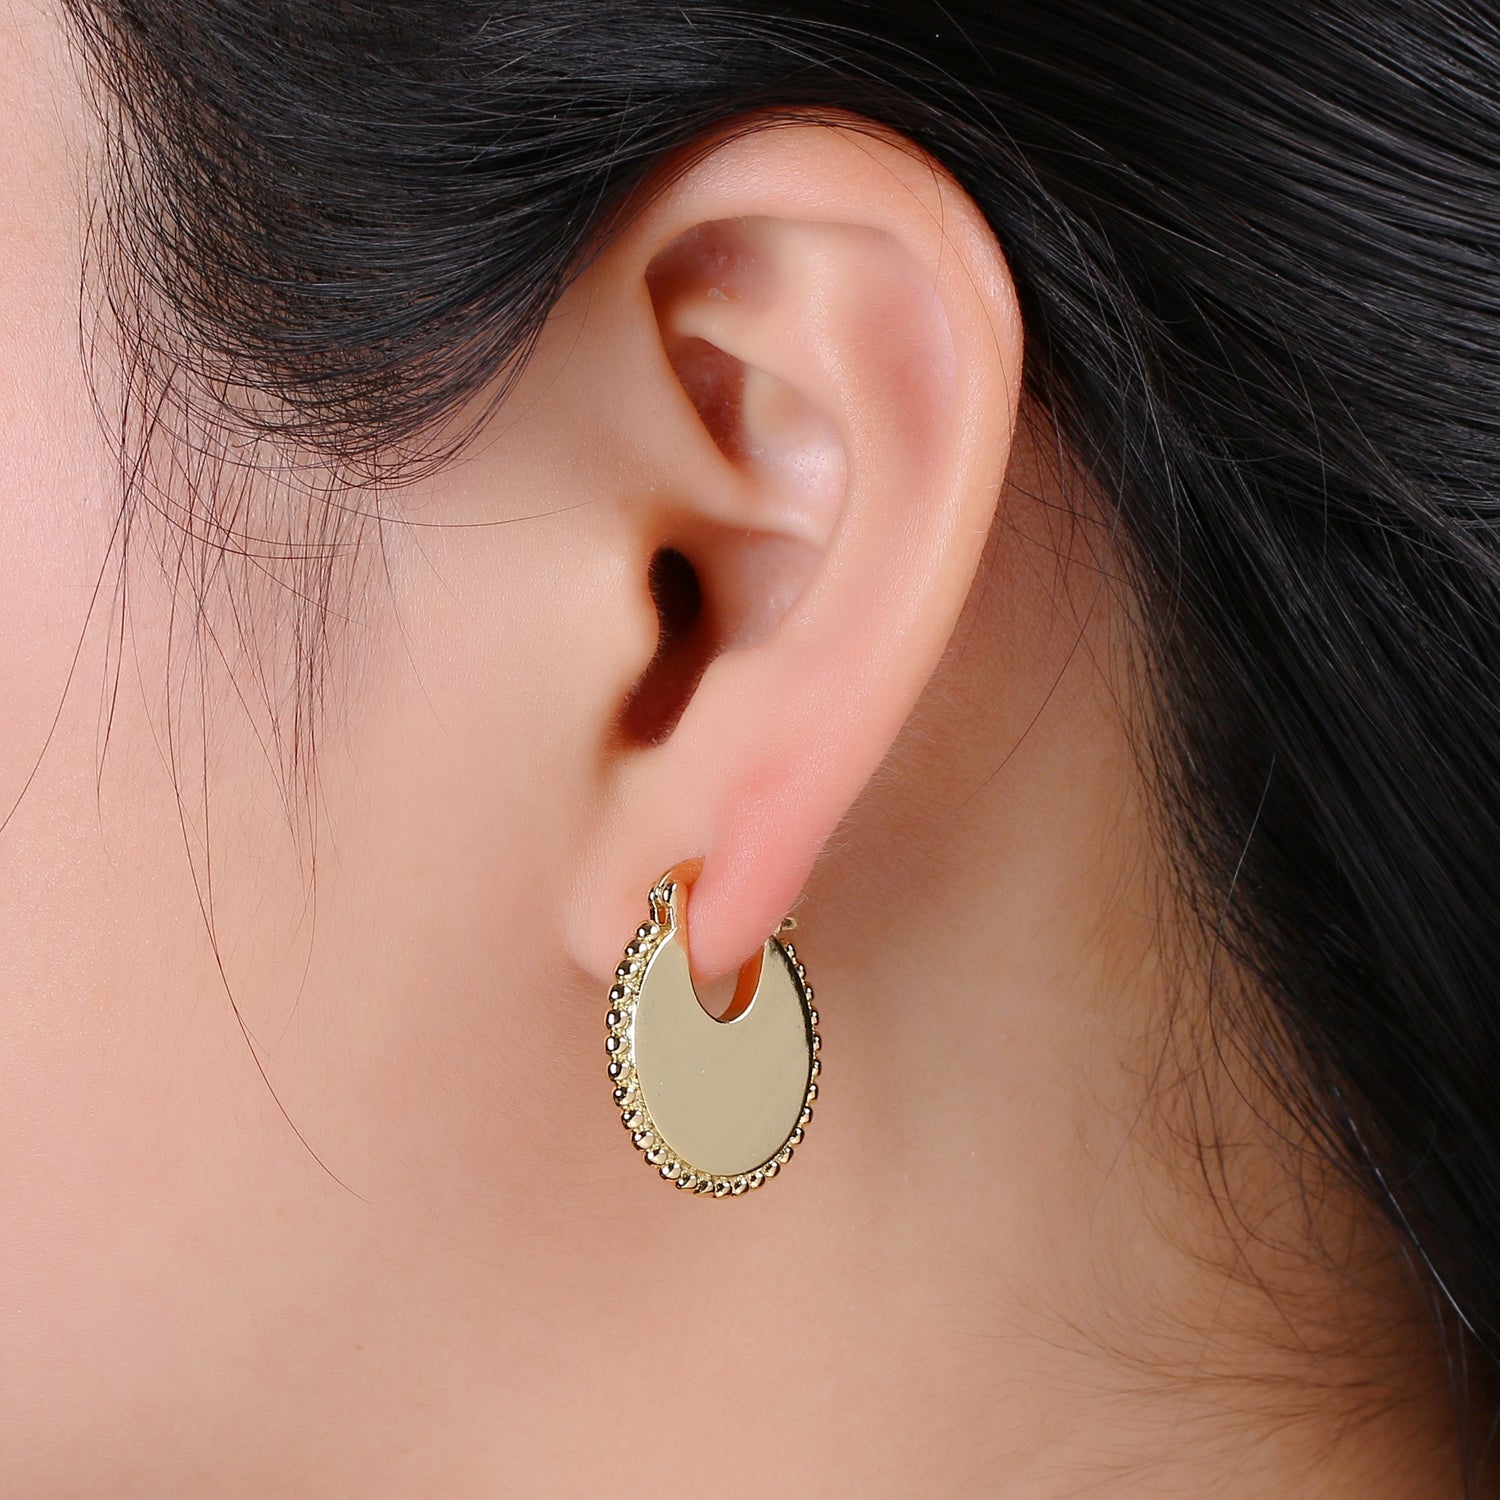 Big Statement Gold Earrings, Gold Fan Earrings, Large Gold Earrings, Women Big Earrings Bold Statement Jewelry Earr-1315 - DLUXCA